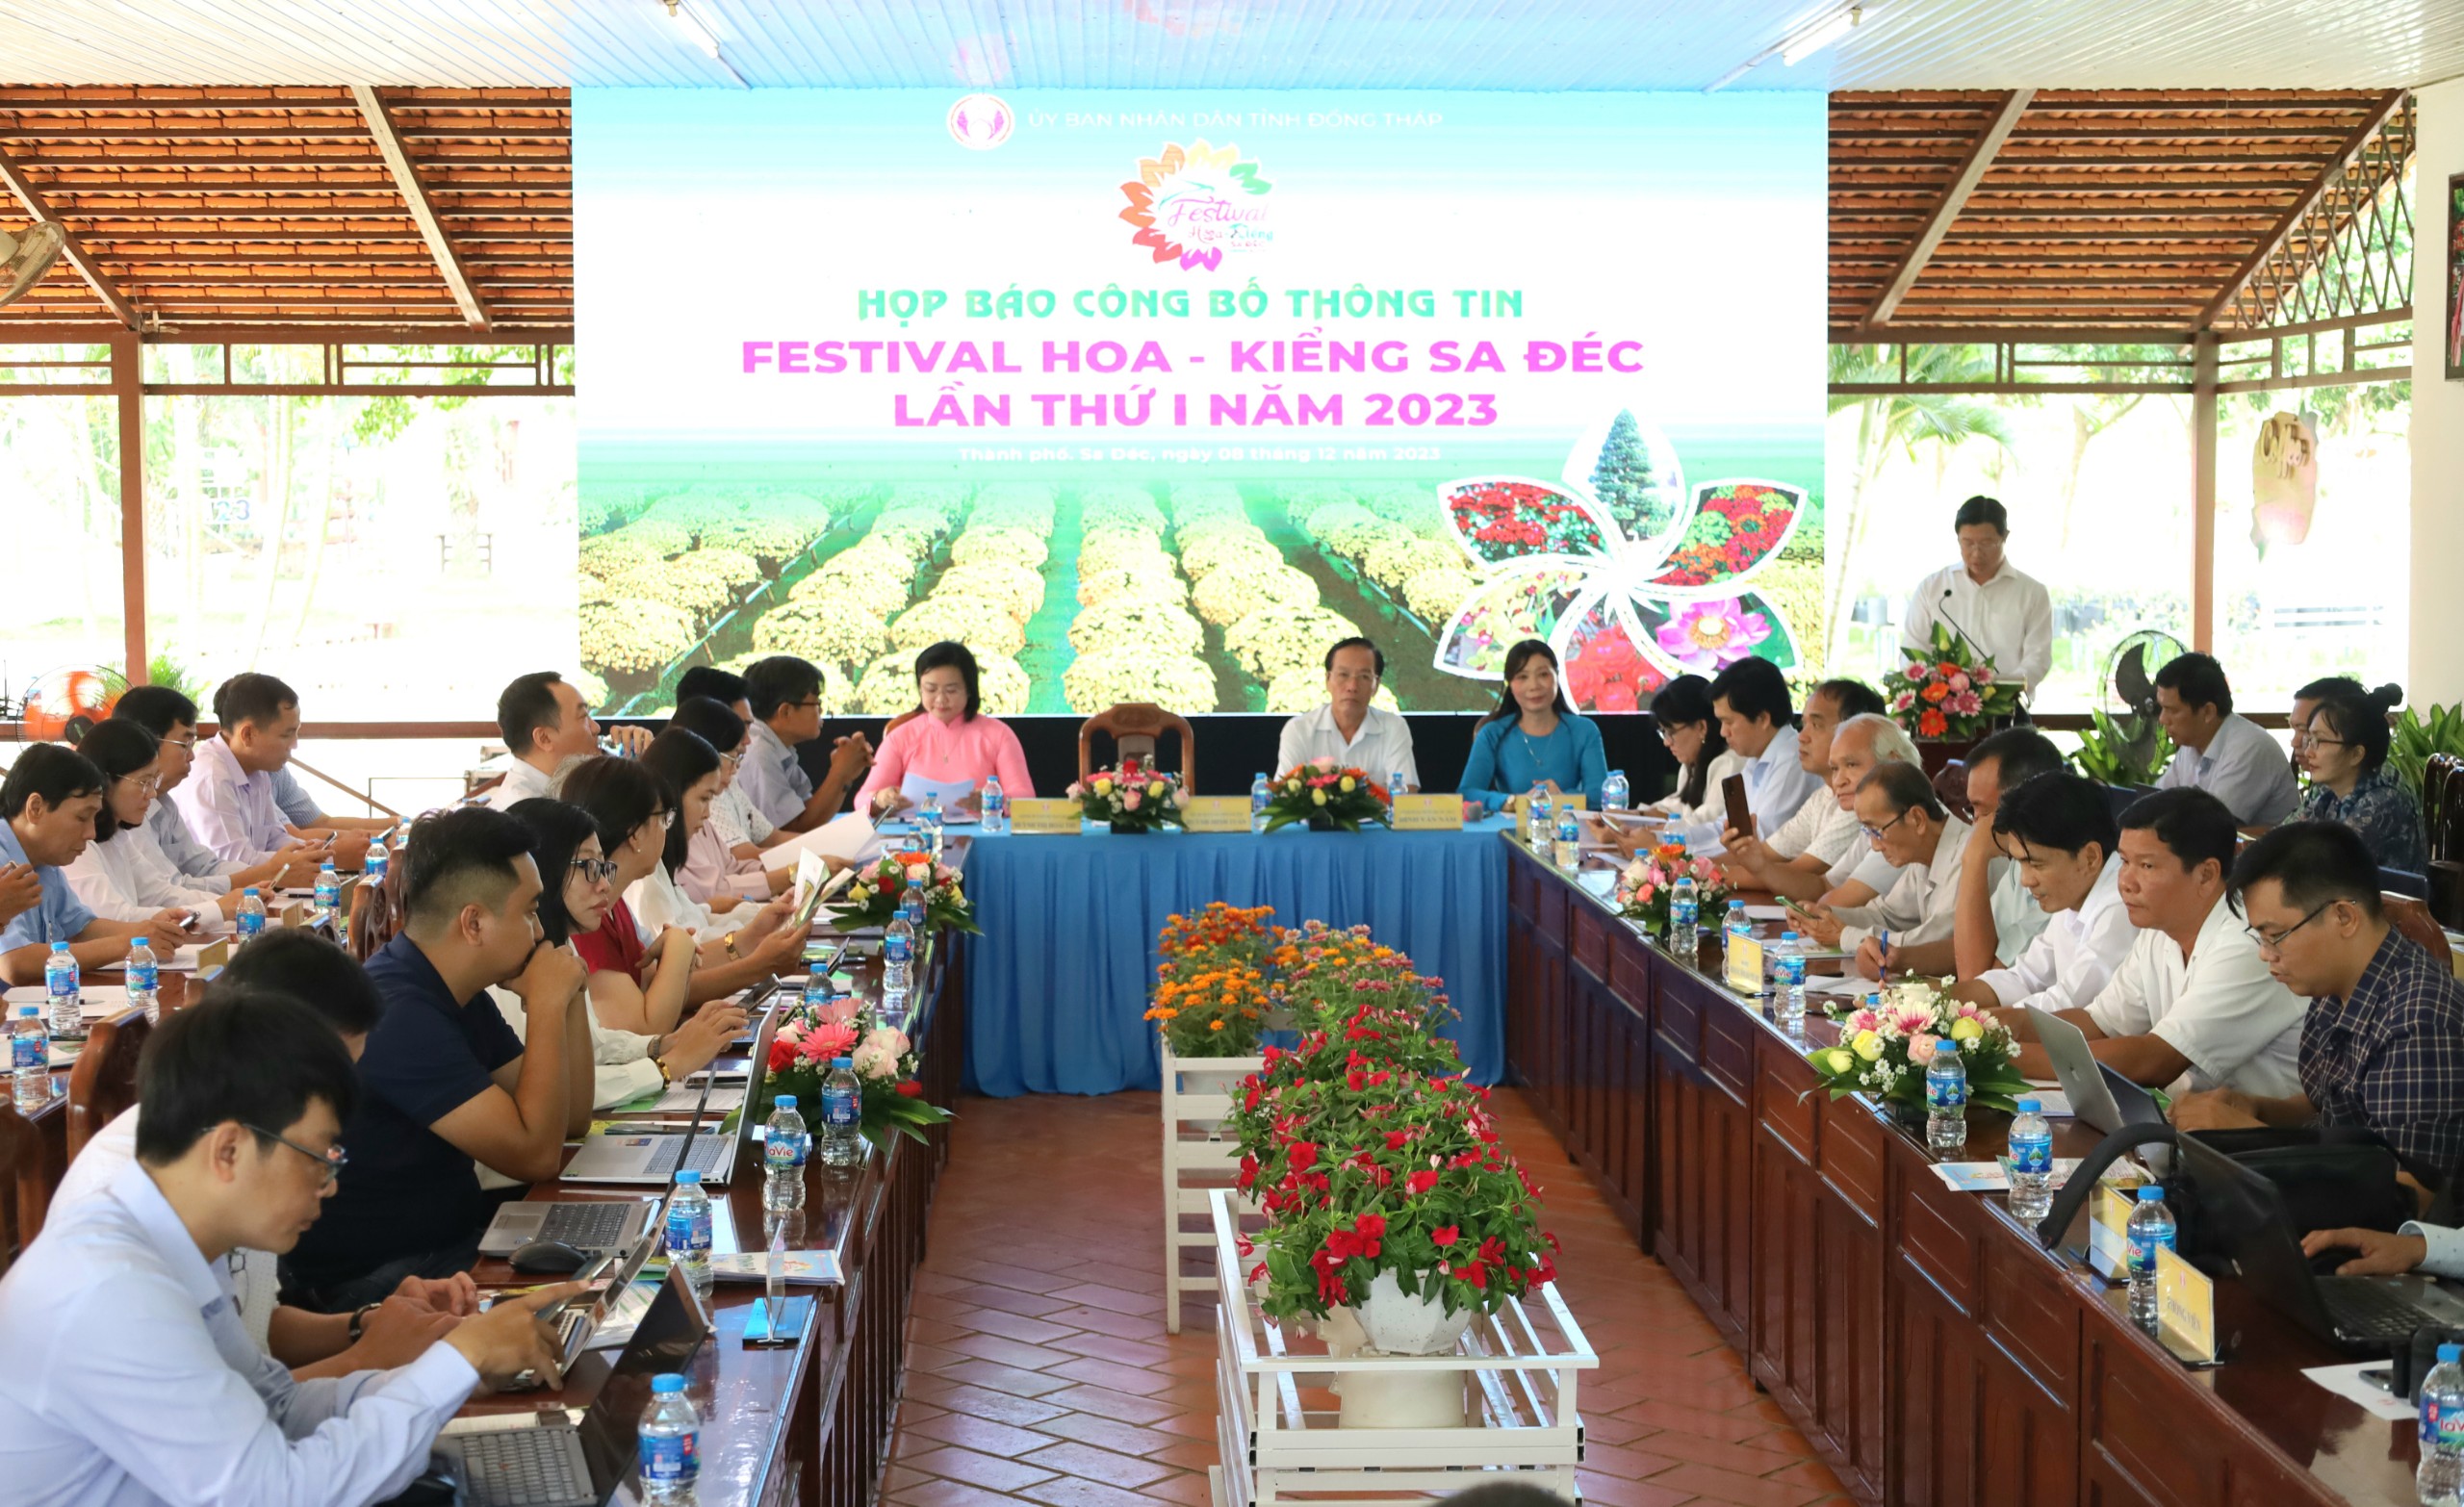 Quang cảnh buổi họp báo công bố sự kiện Festival hoa kiểng Sa Đéc năm 2023.